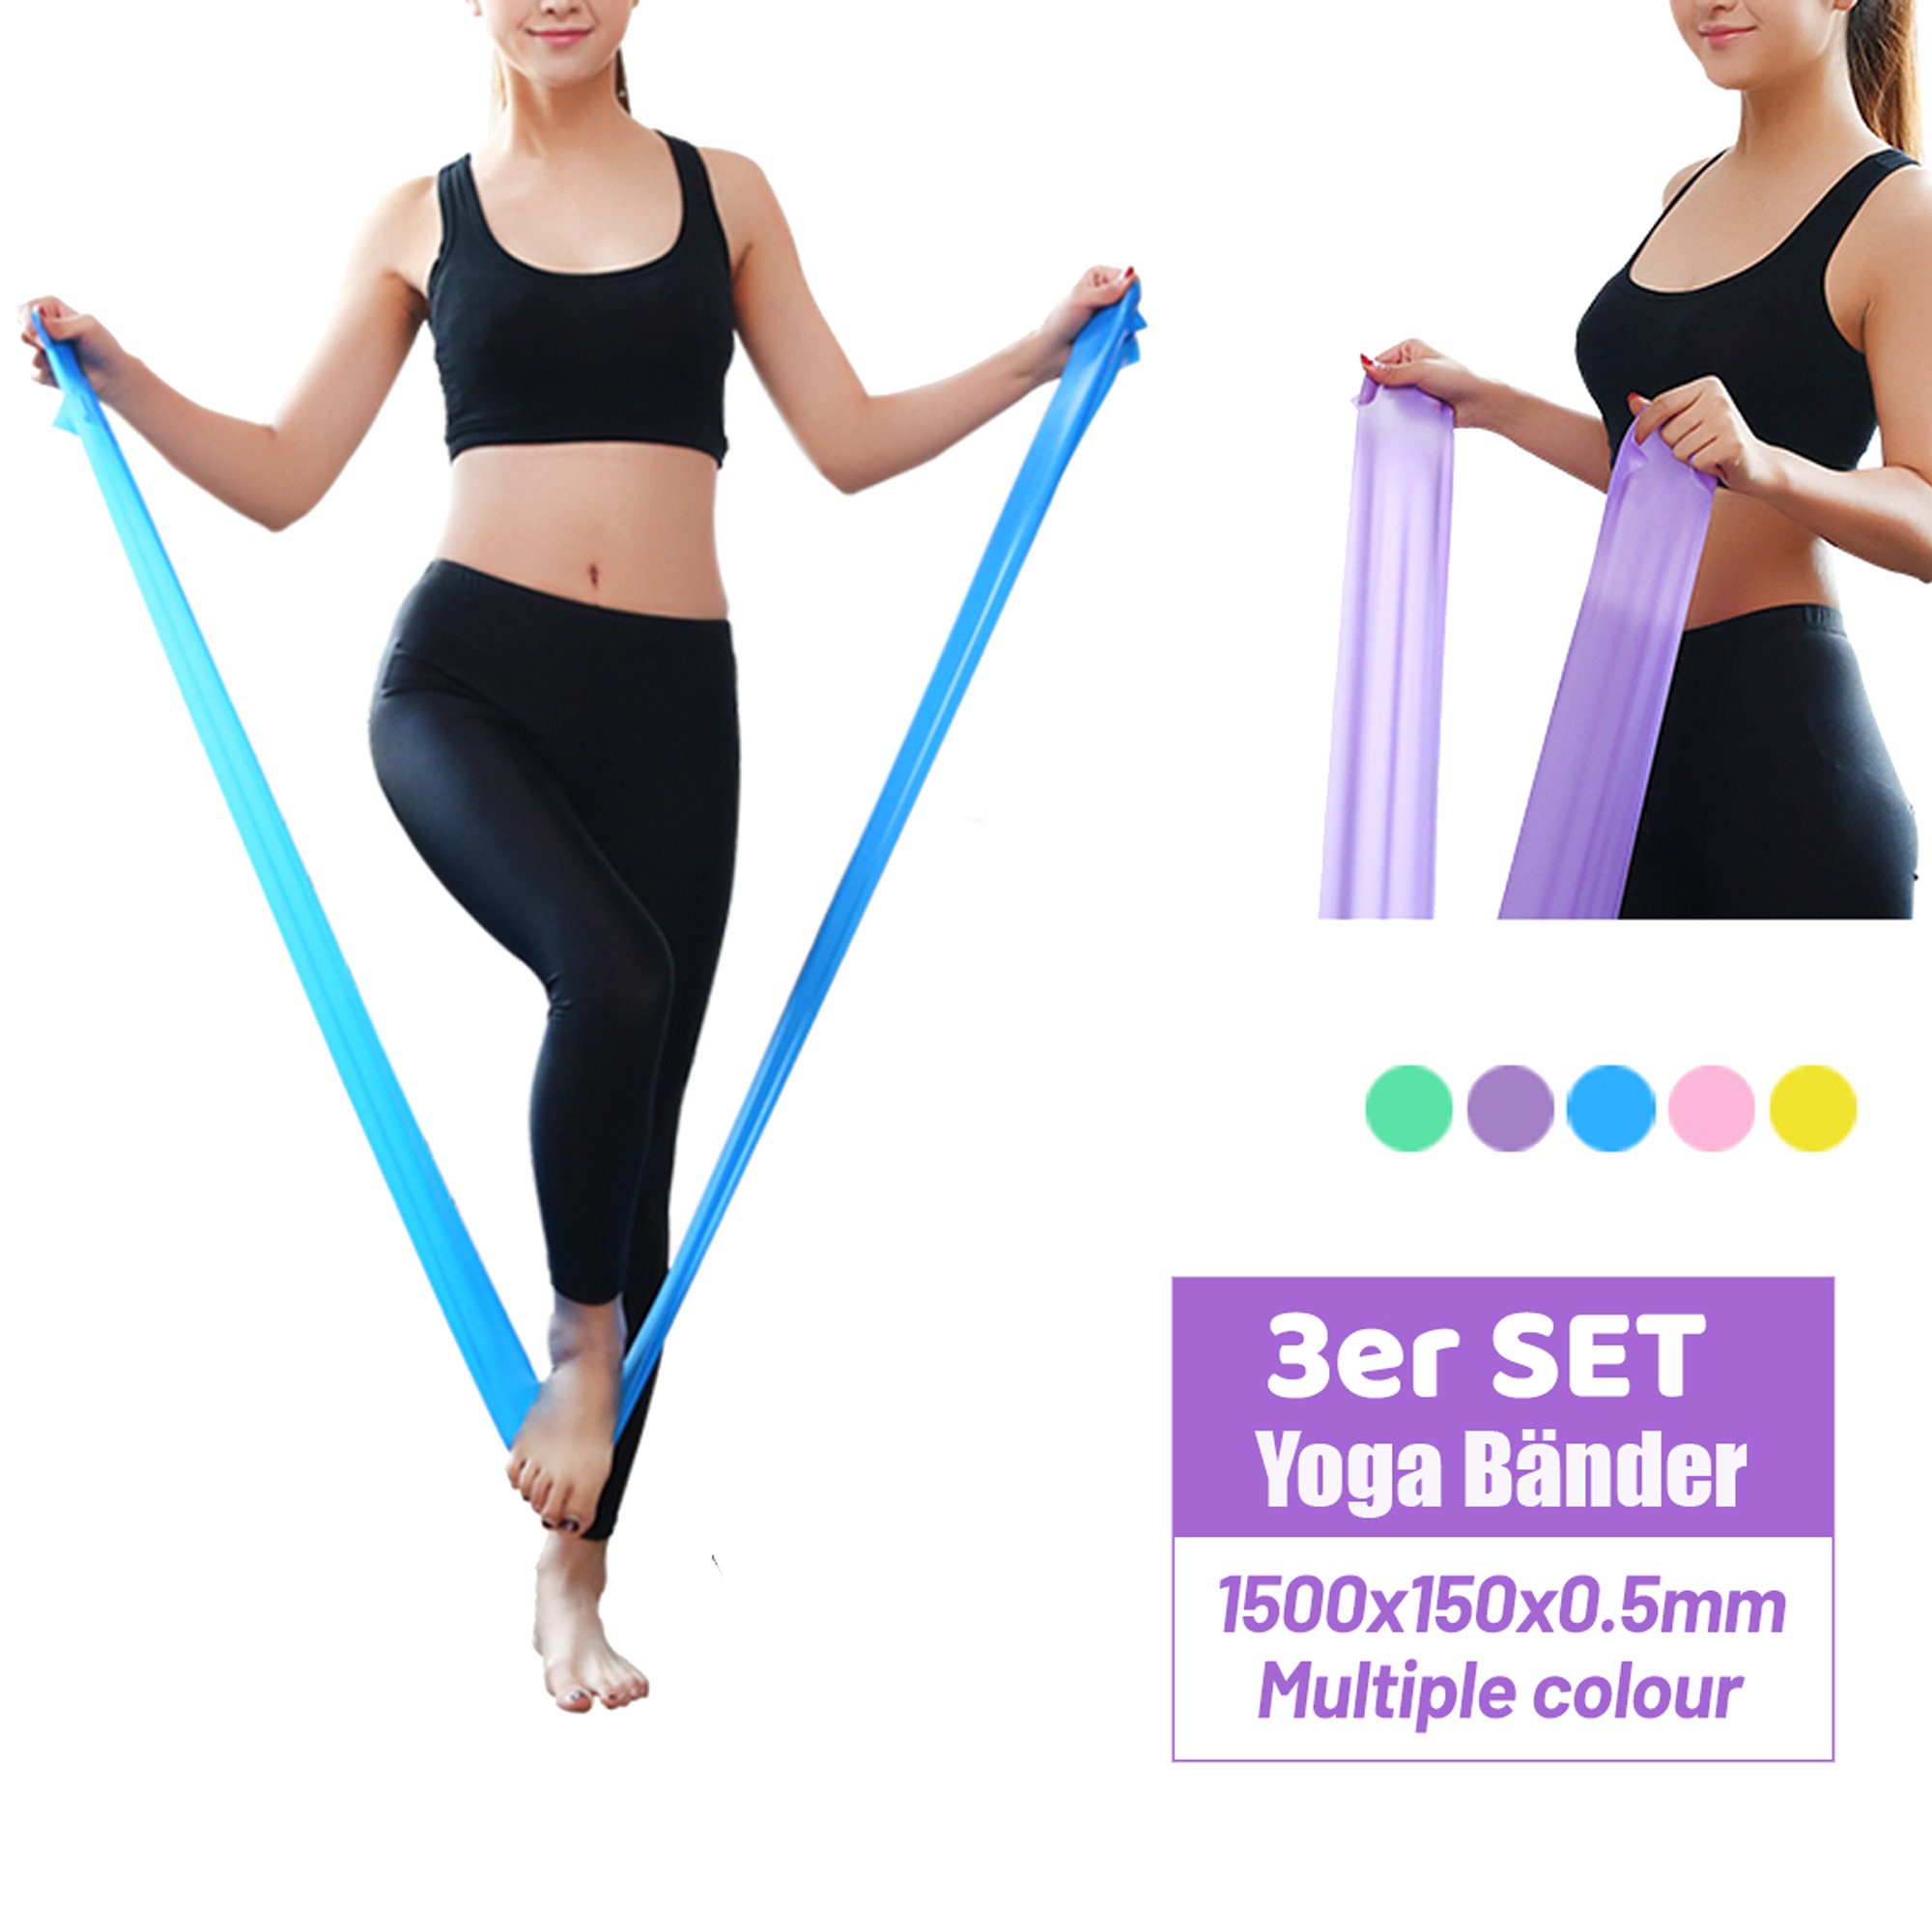 Kit de barre de yoga Pilates portable, équipement de Pilates avec barre de  bande de résistance pour l'entraînement total du corps, yoga, fitness,  stretch, entraînement de résistance à la maison